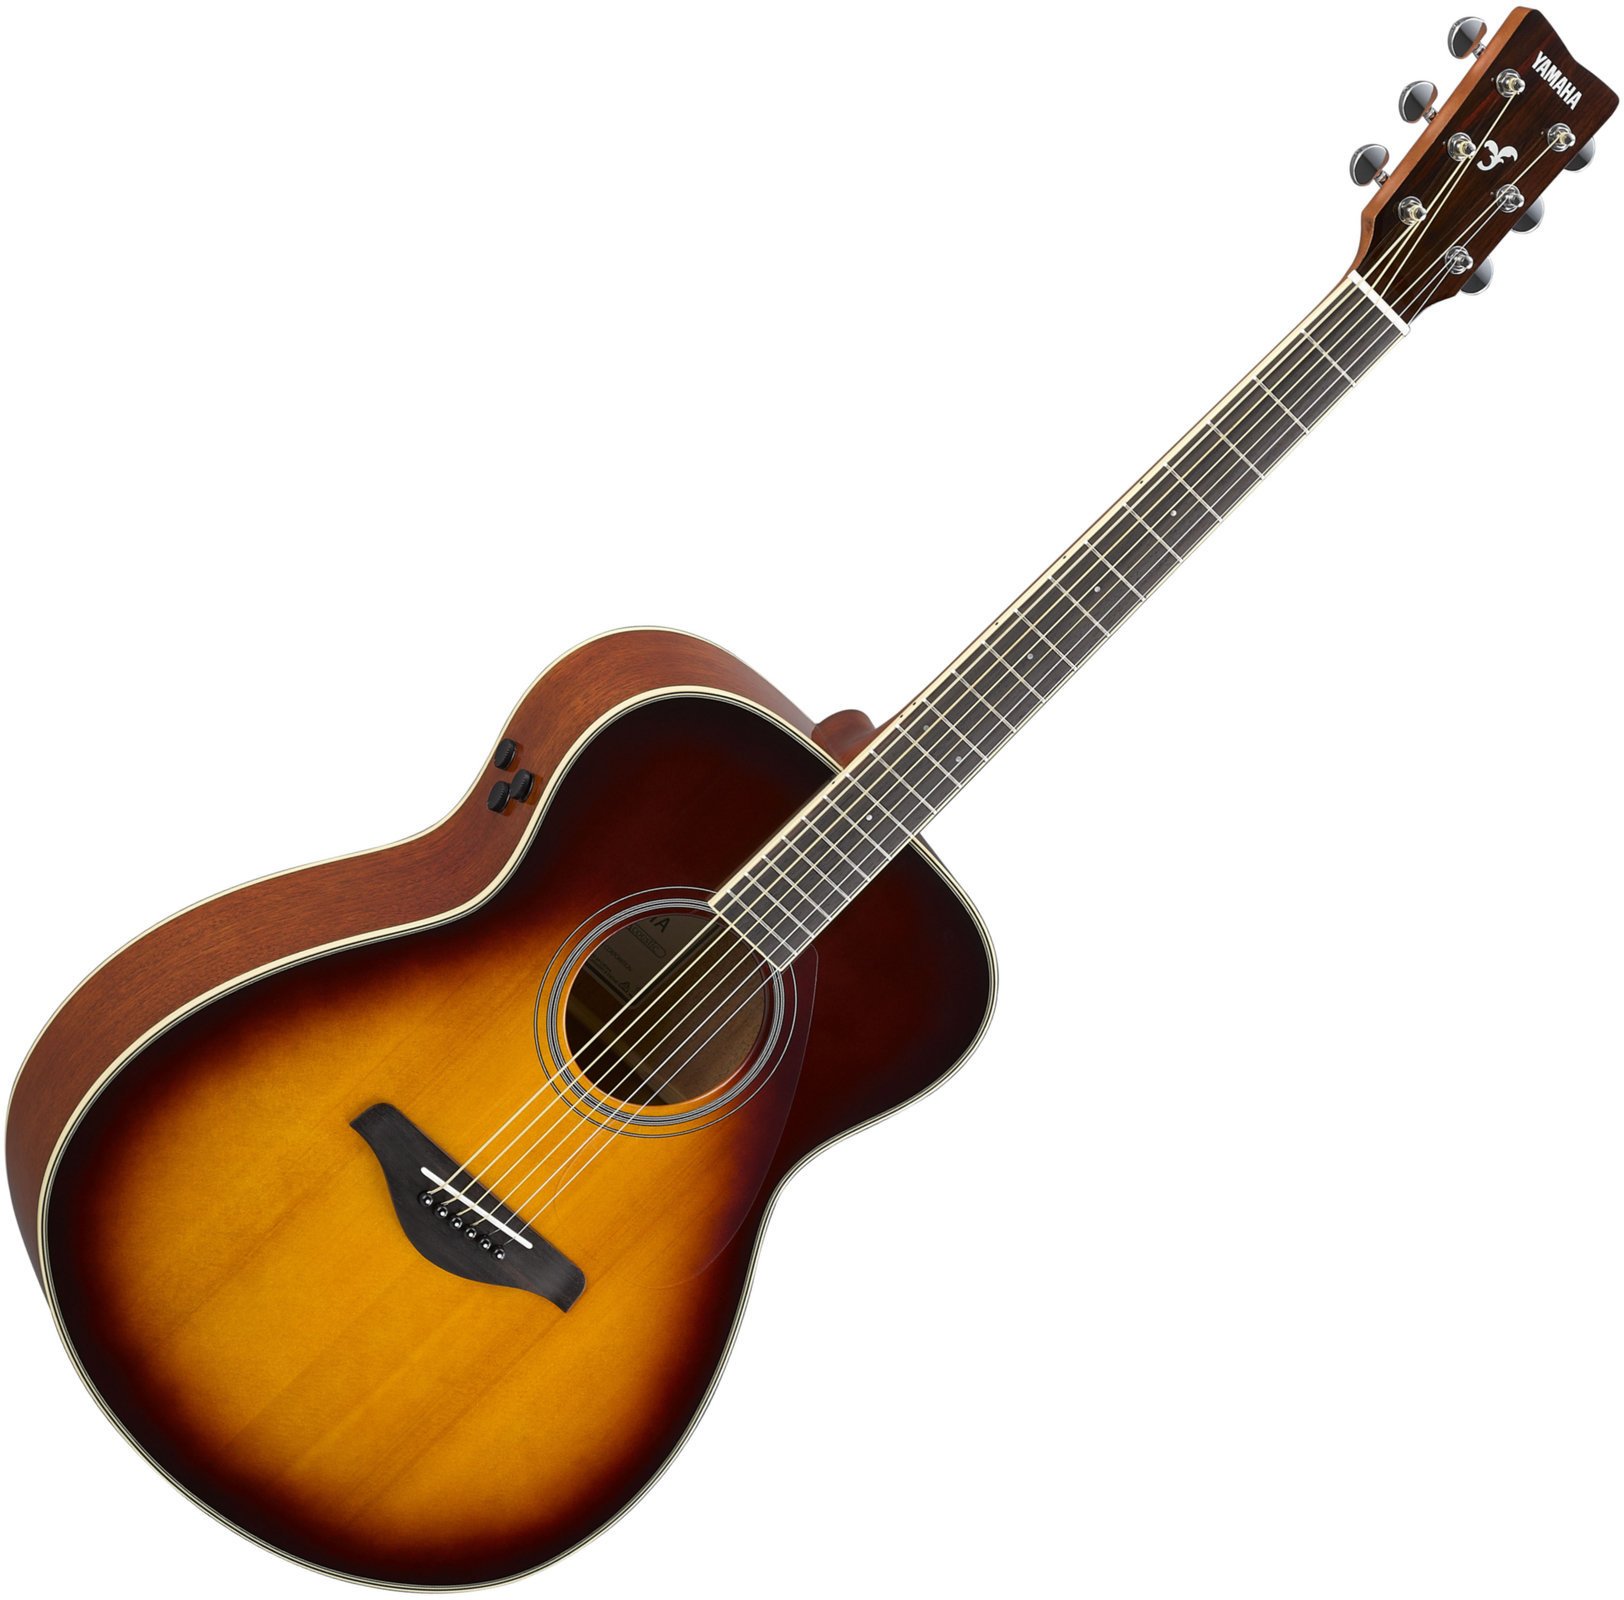 Jumbo elektro-akoestische gitaar Yamaha FS-TA Brown Sunburst